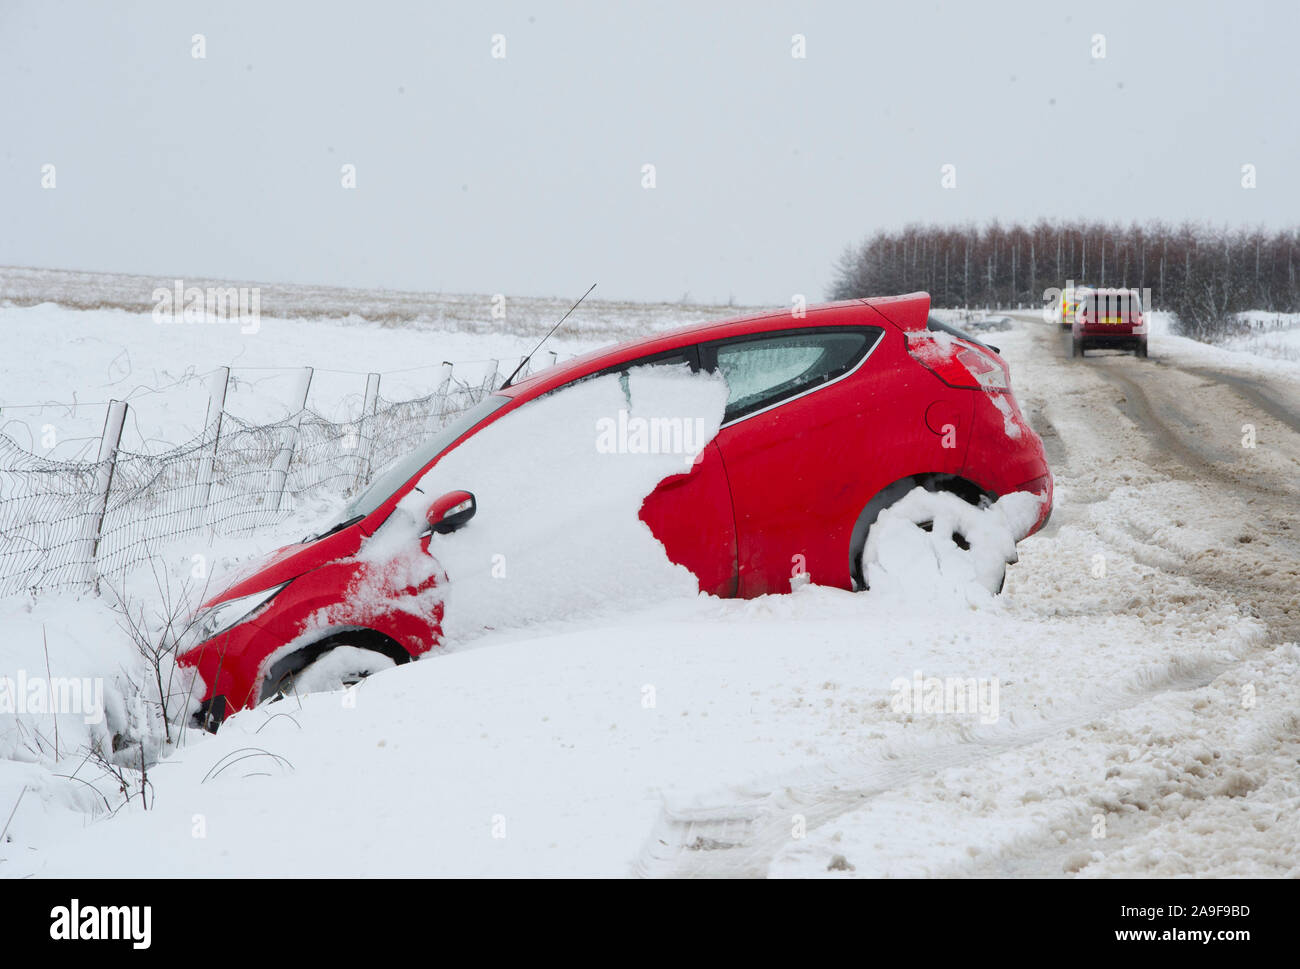 Schnee vom auto entfernen. auto von schneefall reinigen. schnee auf autos  nach schneefall. urbane winterszene. auto mit neuschnee bedeckt. der  prozess der reinigung des autos von schnee